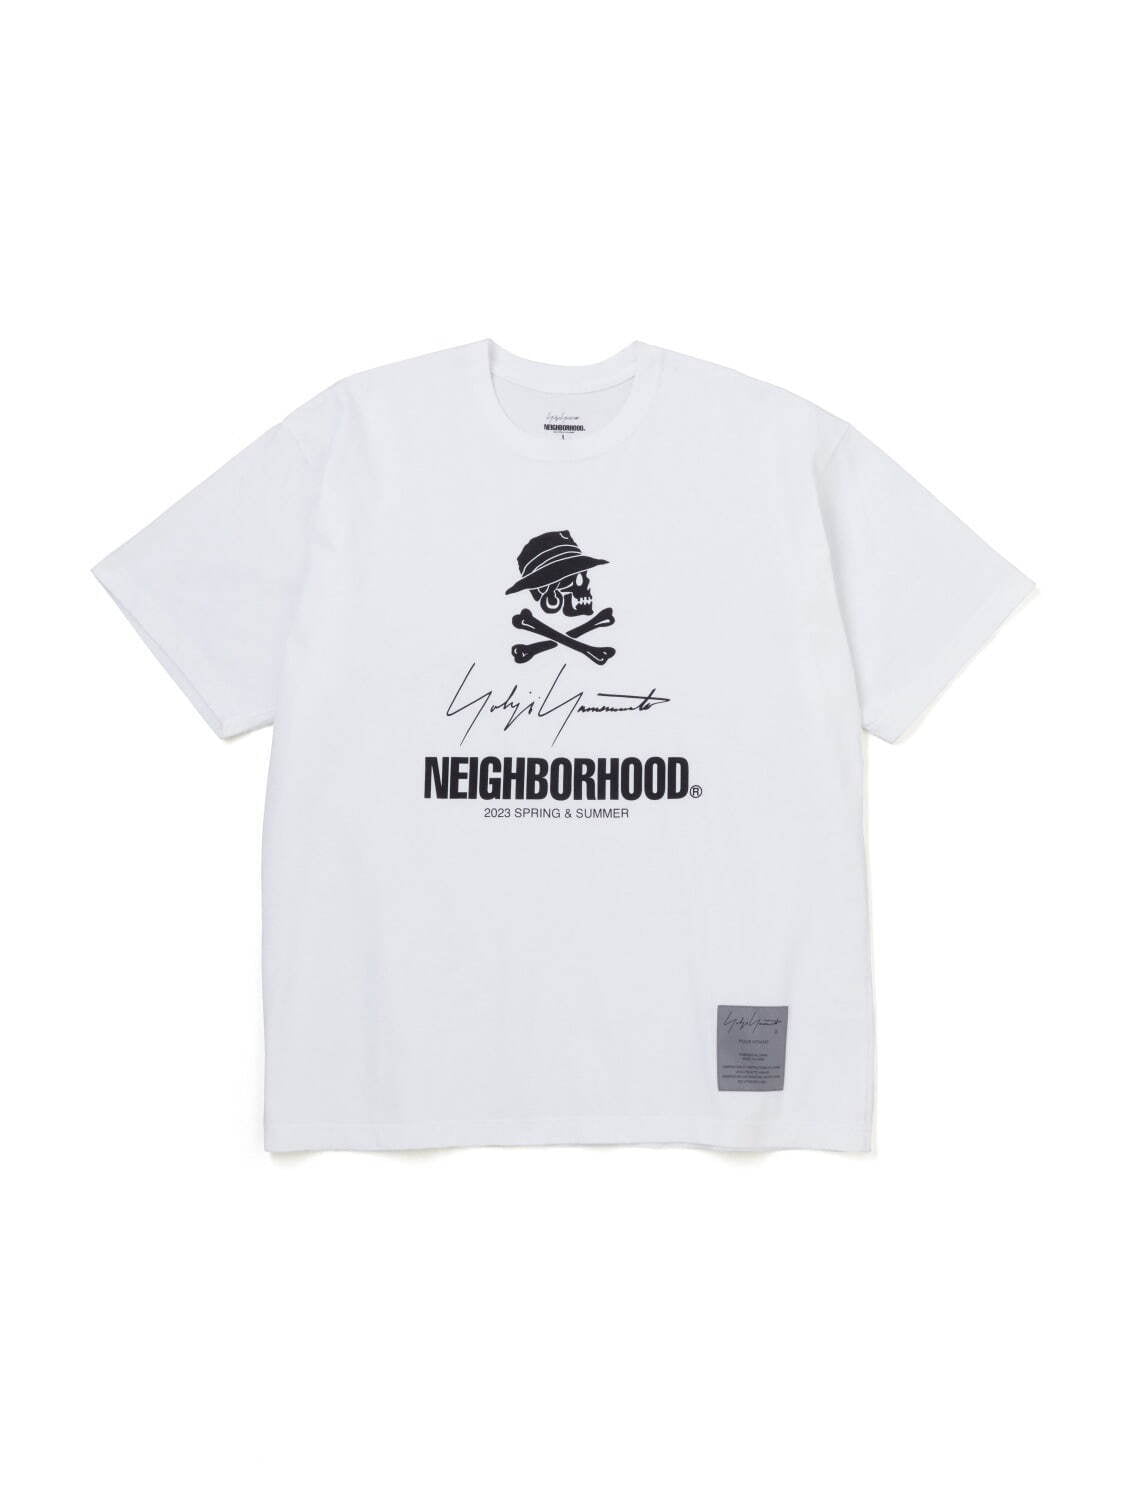 NEIGHBORHOOD x Yohji Yamamoto POUR HOMME Collection